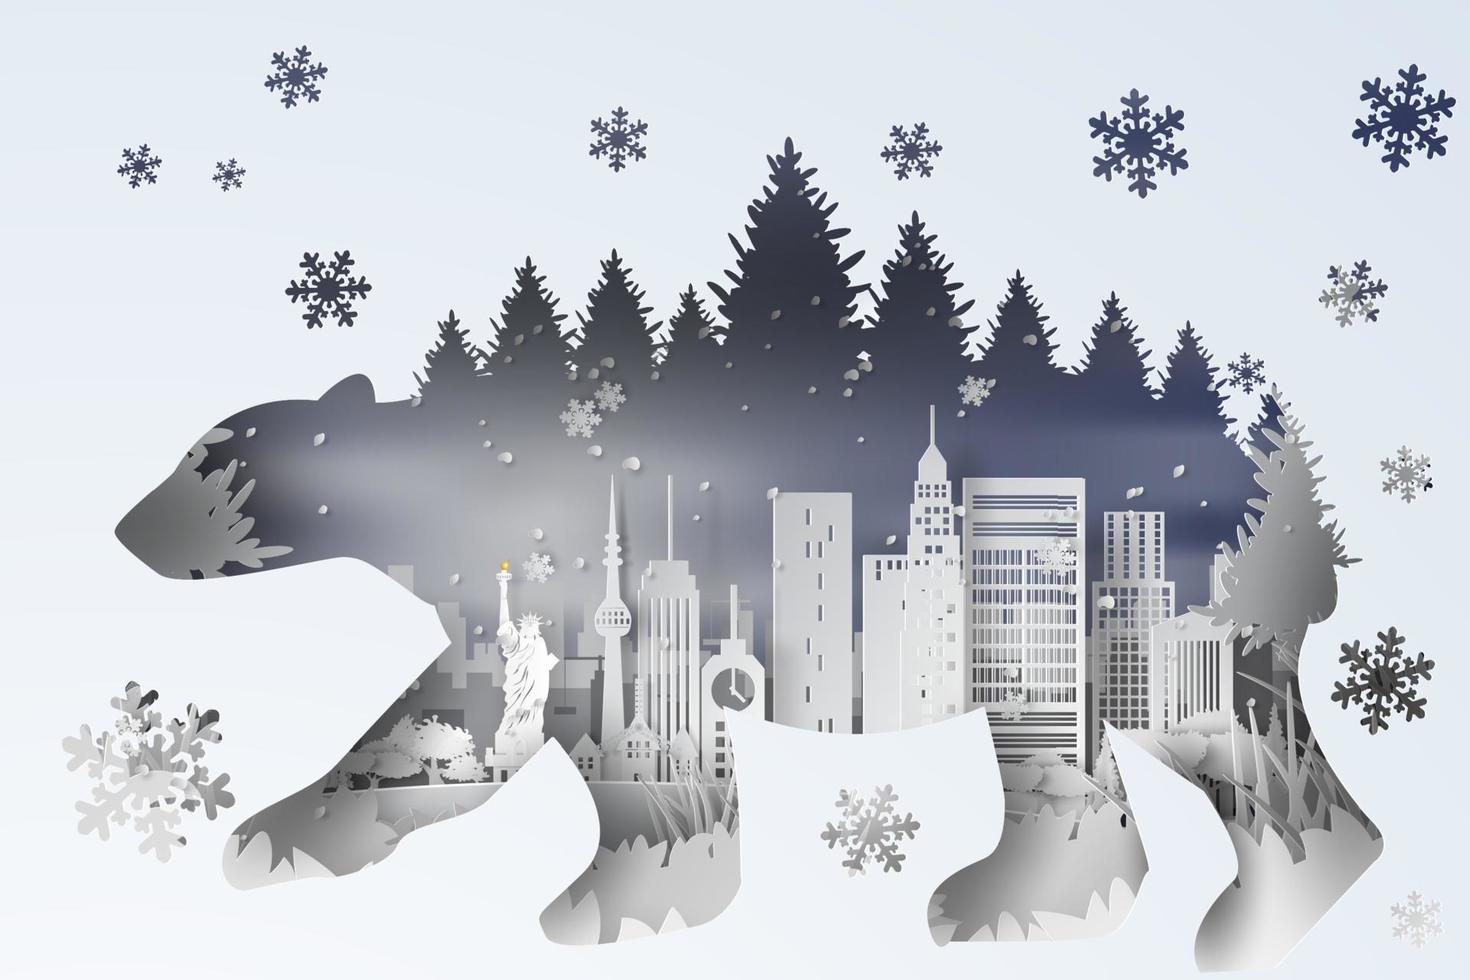 3d illustration digital papper konst av skog i ny york stad usa. landskap snöig med polär Björn kurva skugga koncept, vit stadsbilder och skog snö se scen, papper skära kreativ design idé, vektor